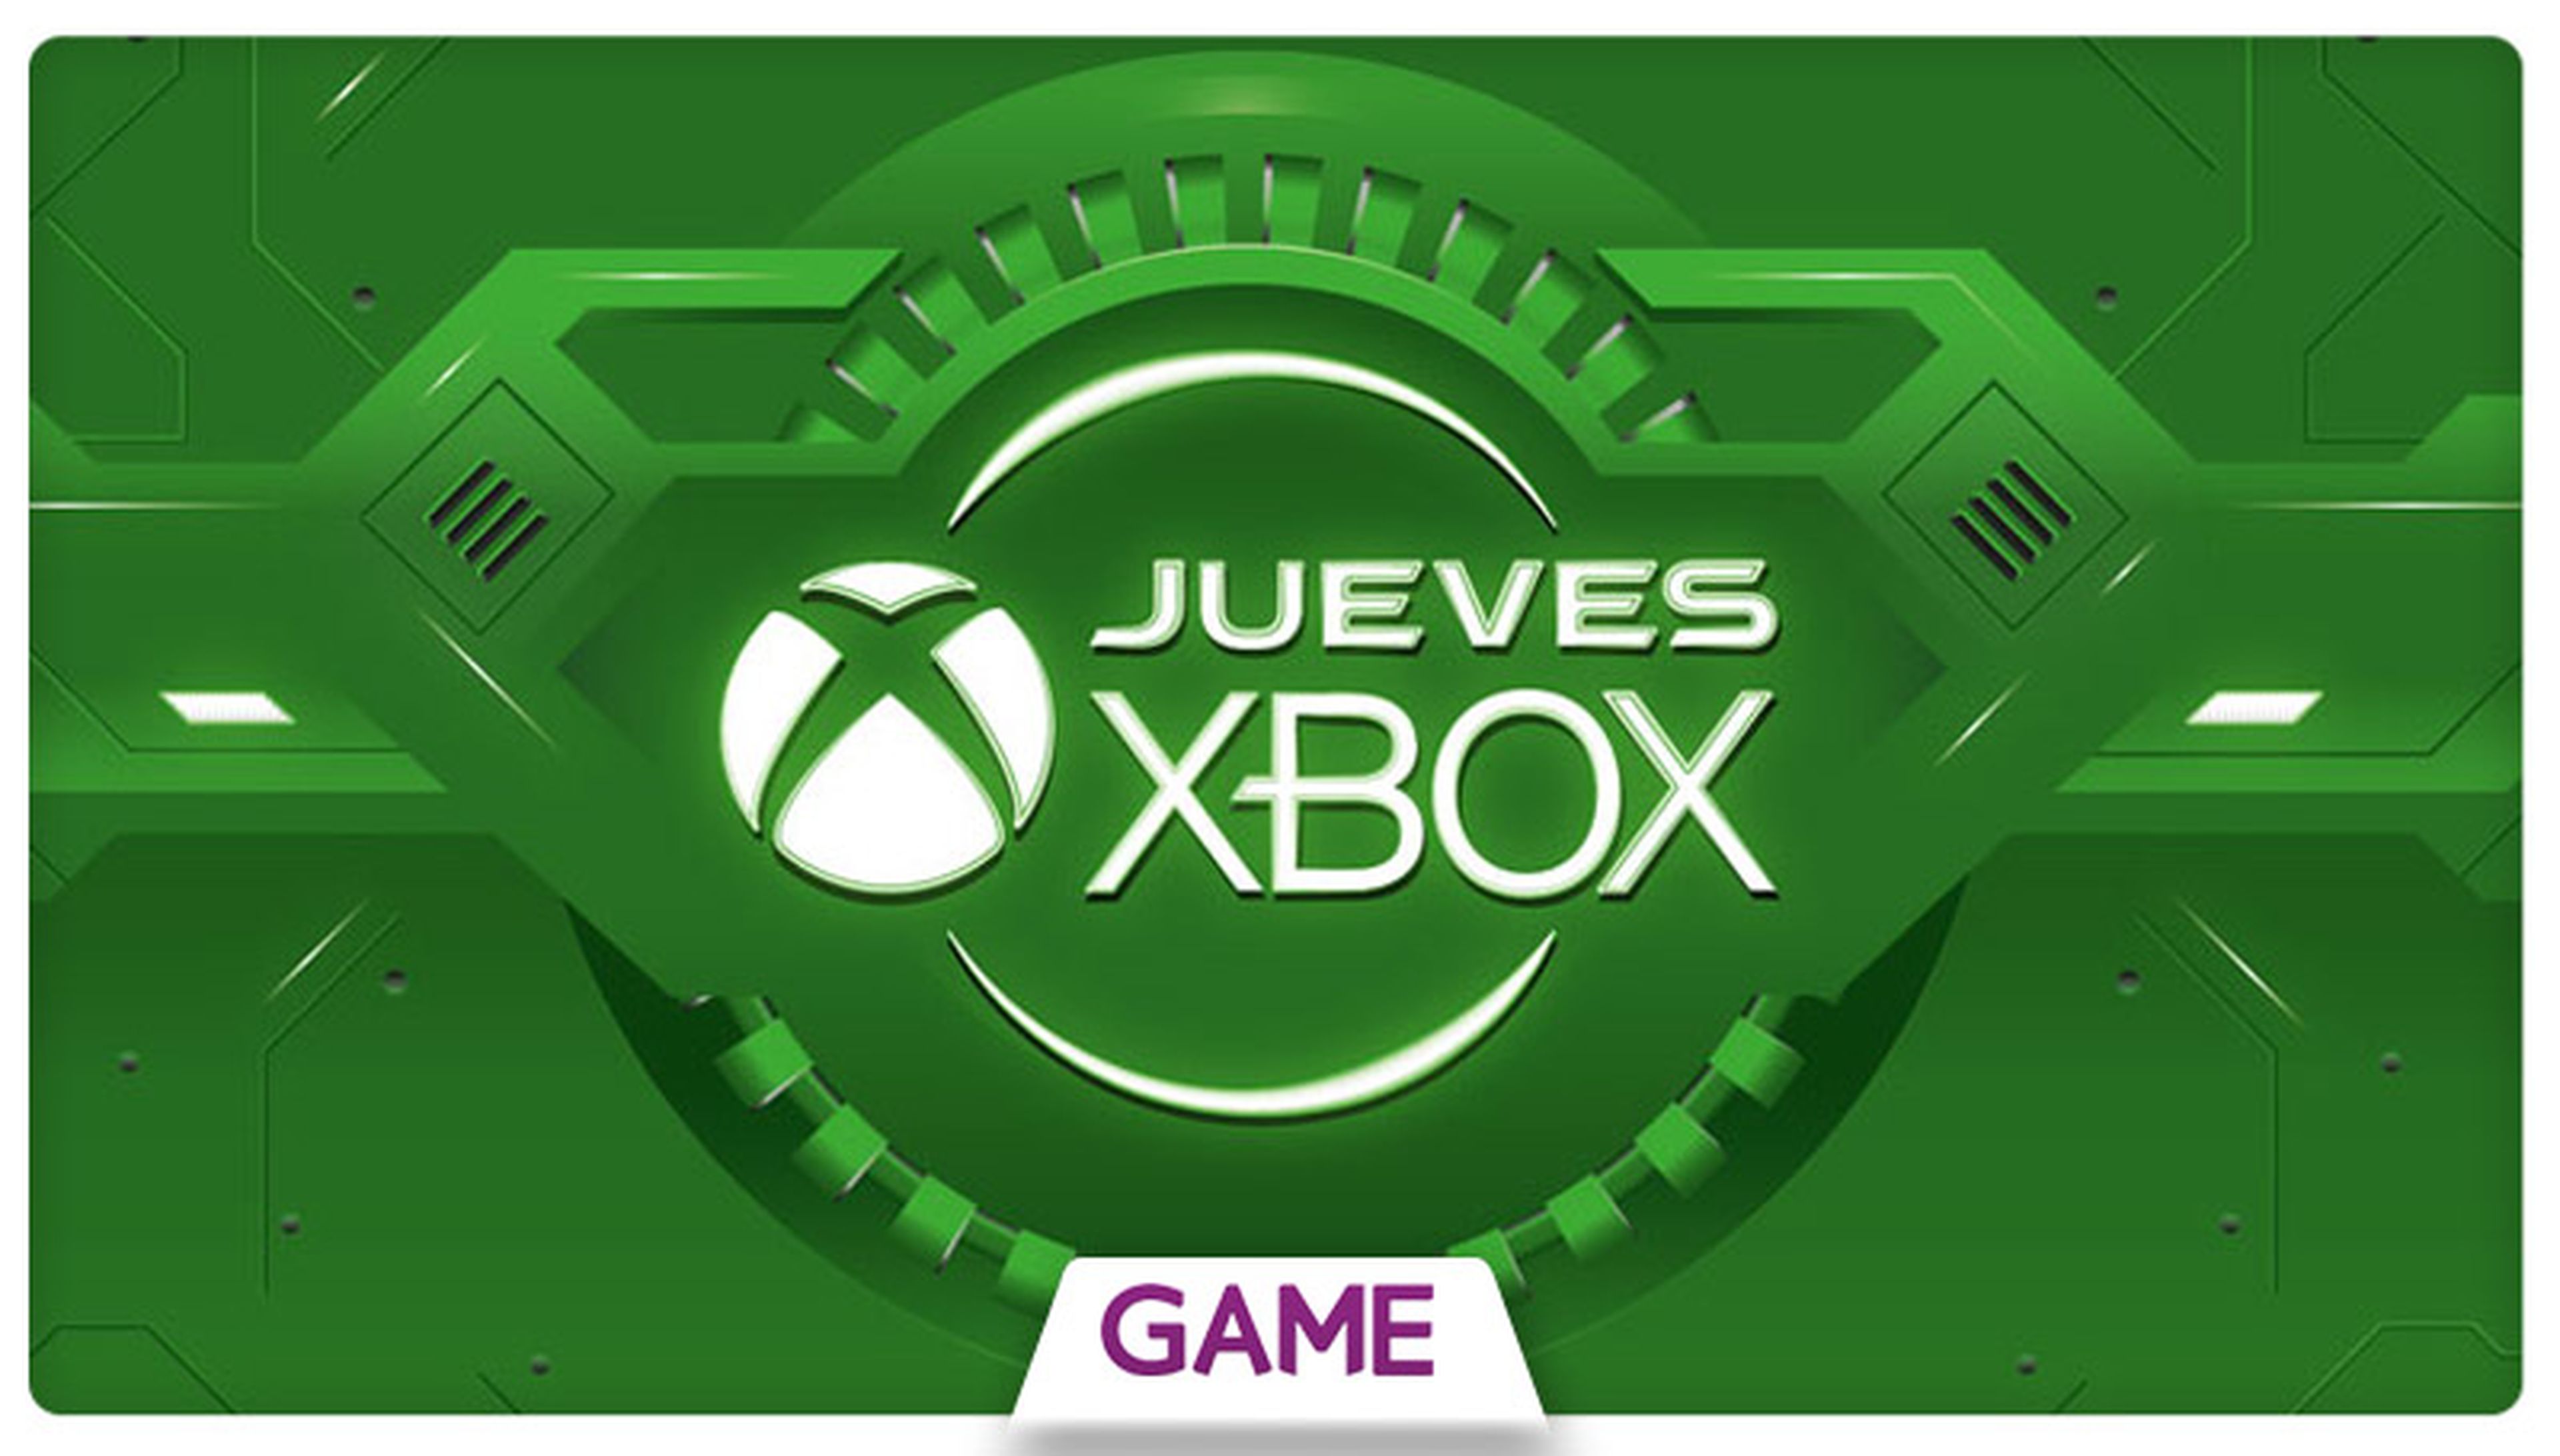 Jueves Xbox en GAME: Ofertas del 23/07/2015